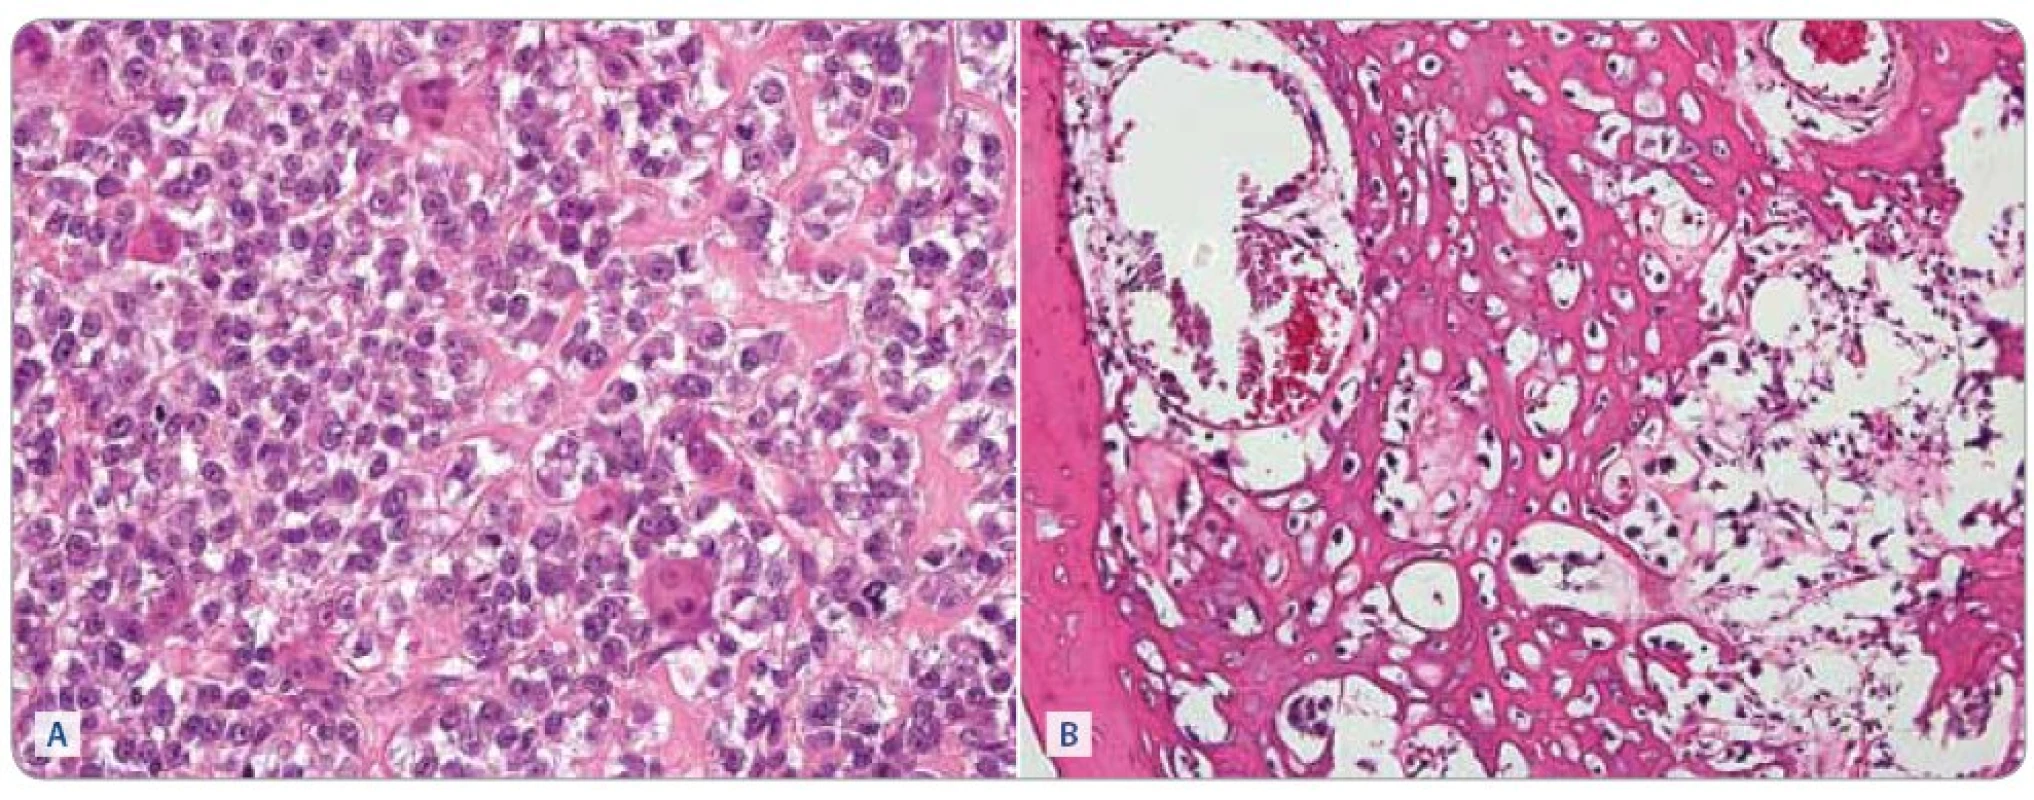 Osteosarkom, biopsie před zahájením (A) chemoterapie a po 6 cyklech léčby (B). Barvení hematoxylin a eosin, zvětšeno 400krát. (A) Nádor je silně buněčný, osteoblasty jsou velké, v tomto případě relativně uniformní, ale je patrná mitotická aktivita. v malém rozsahu je přítomna tvorba nádorového osteoidu, který je patrný jako homogenní nepravidelné pentlice mezi nádorovými buňkami v pravé části snímku. Zastiženy jsou také roztroušené nenádorové osteoklasty. (B) v nádoru převládá tvorba nádorového osteoidu, buněčnost je malá, nádorové buňky jsou však v tomto zorném poli vitální. V levé části obrázku je lamela spongiózy nenádorového původu.